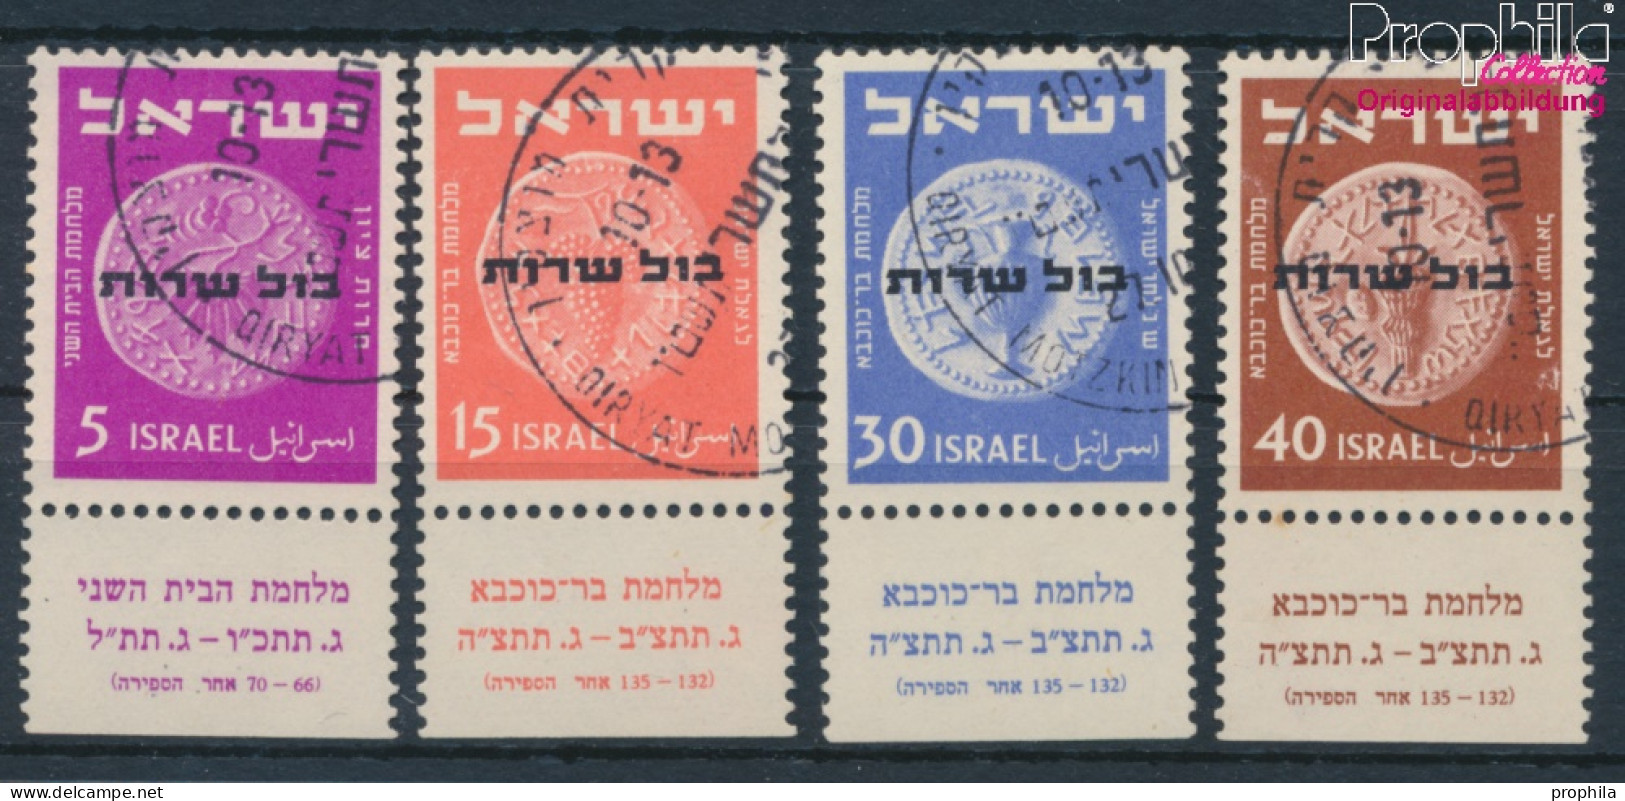 Israel D1-D4 Mit Tab (kompl.Ausg.) Gestempelt 1951 Alte Münzen (10256587 - Usati (con Tab)